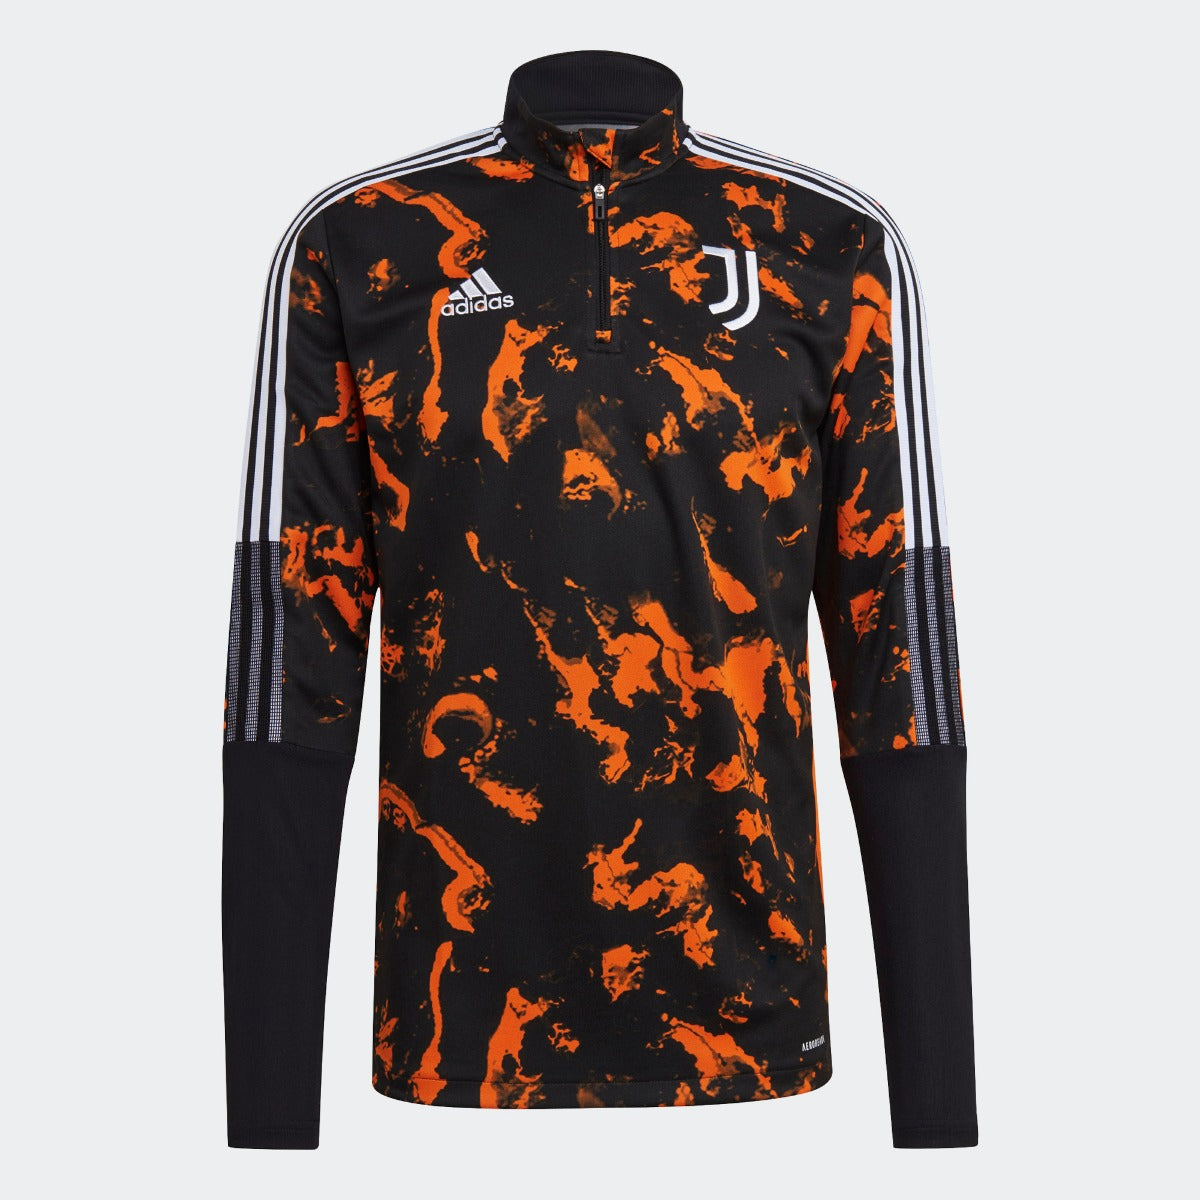 Adidas 2020-21 Juventus AOP Training Top - Black-Orange